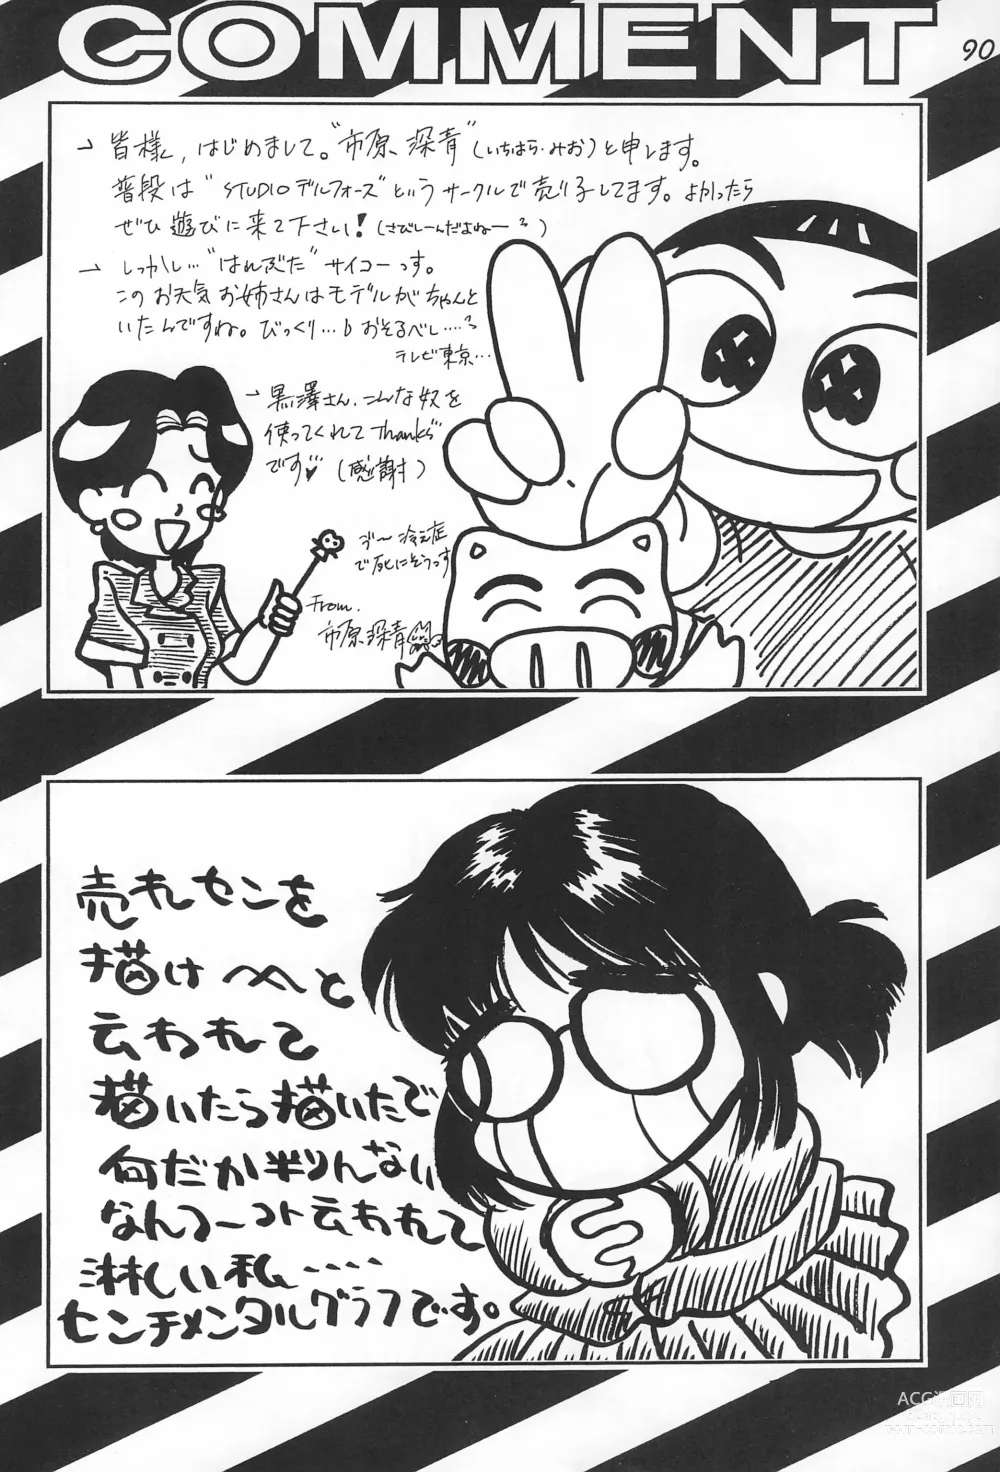 Page 92 of doujinshi Gokuraku Tokkyuu CAMERON